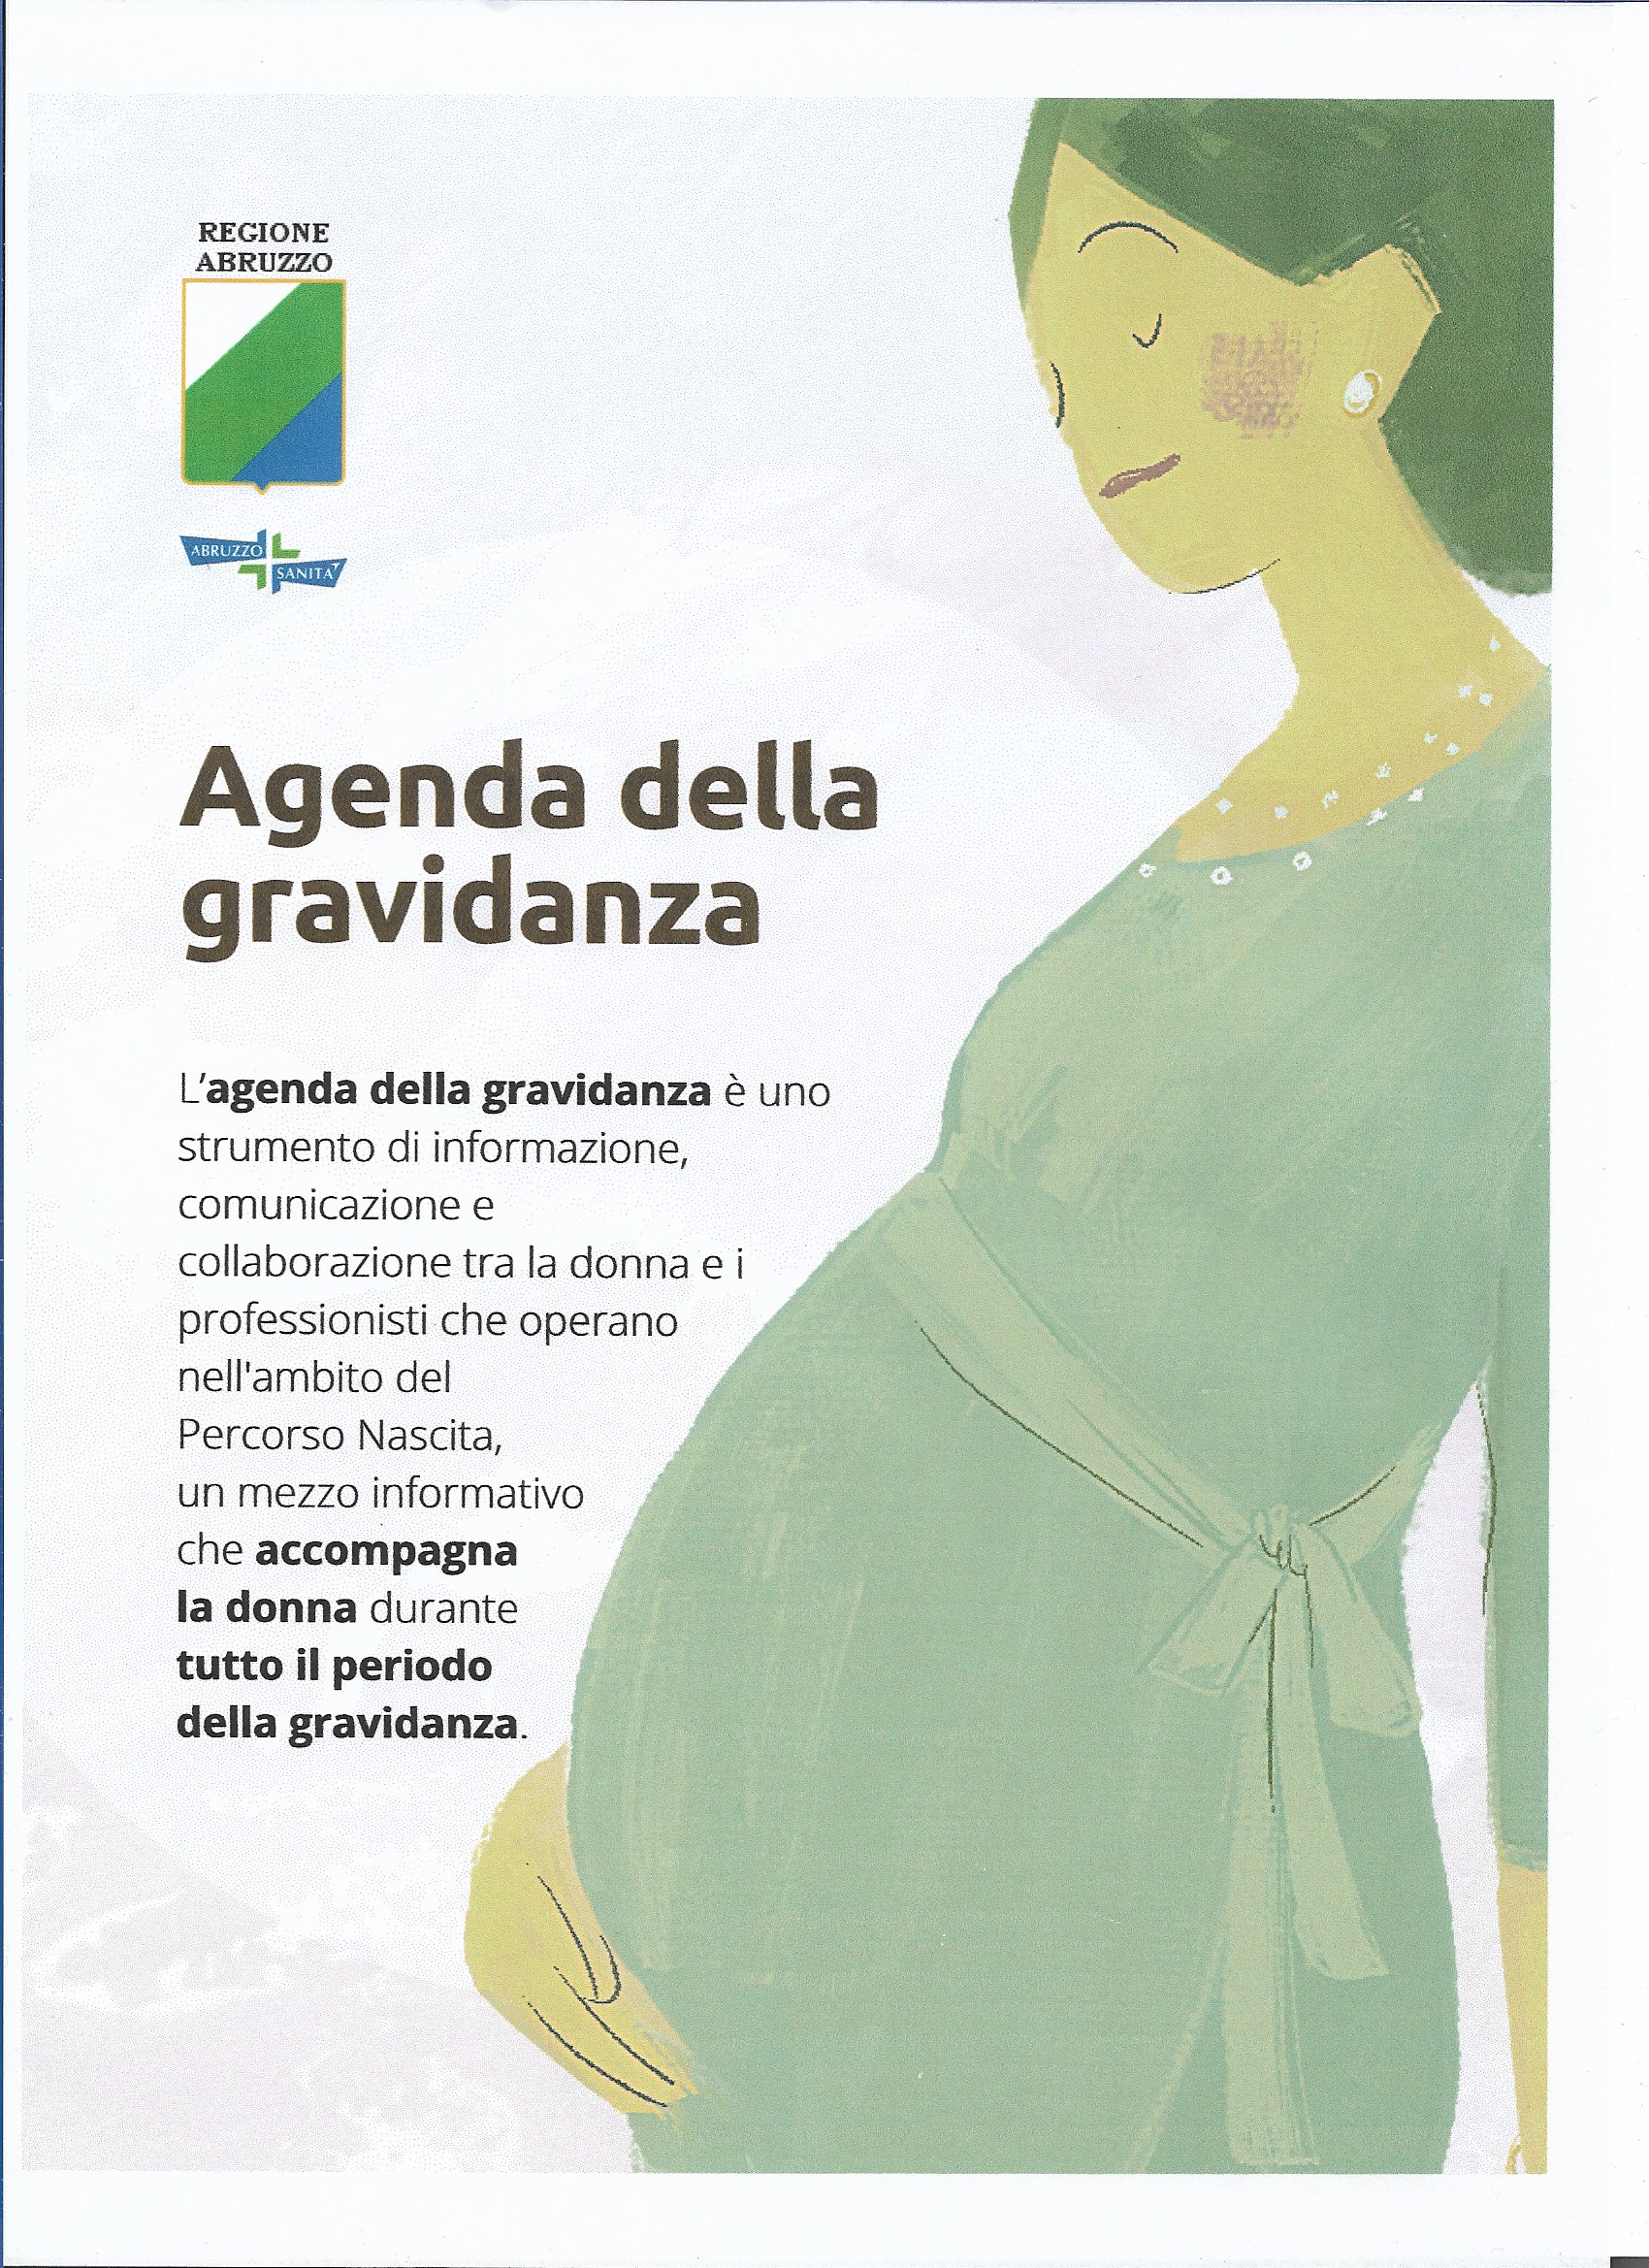 https://cittadinanzattiva.abruzzo.it/web/wp-content/uploads/2021/11/Agenda-della-gravidanza-abruzzo380.jpeg